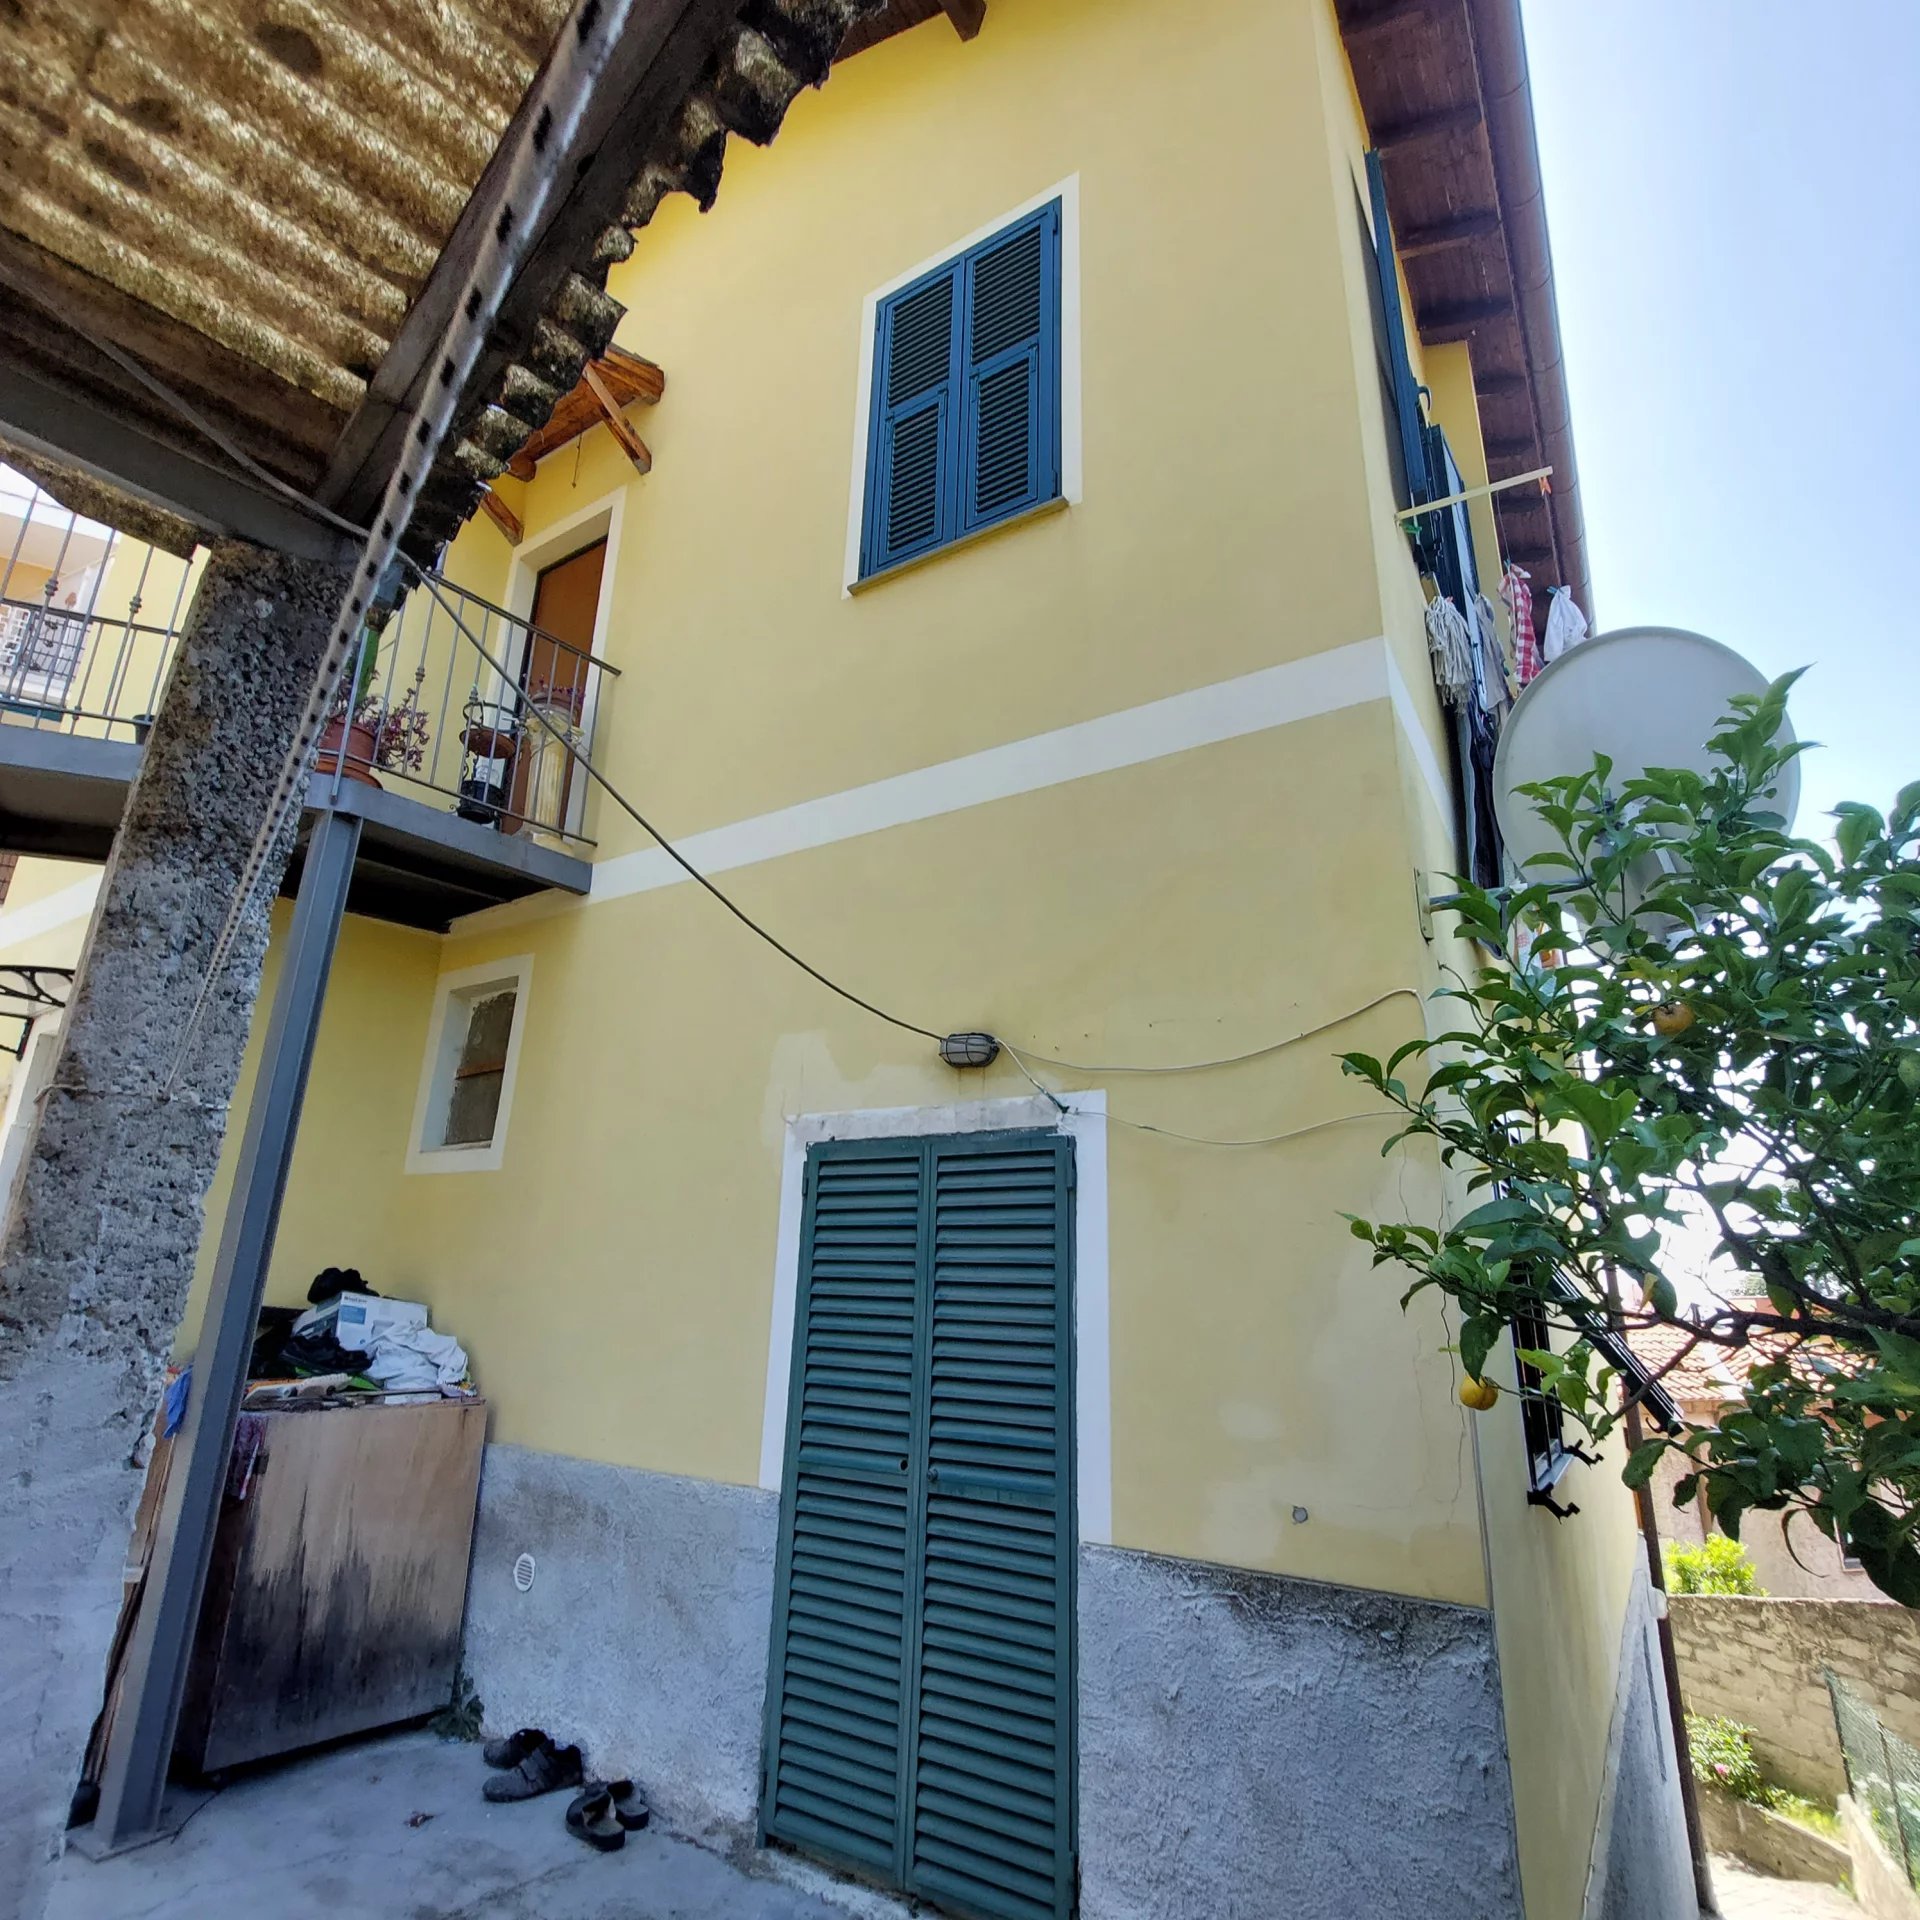 Vente Appartement - Vallecrosia Poggio Ponente - Italie